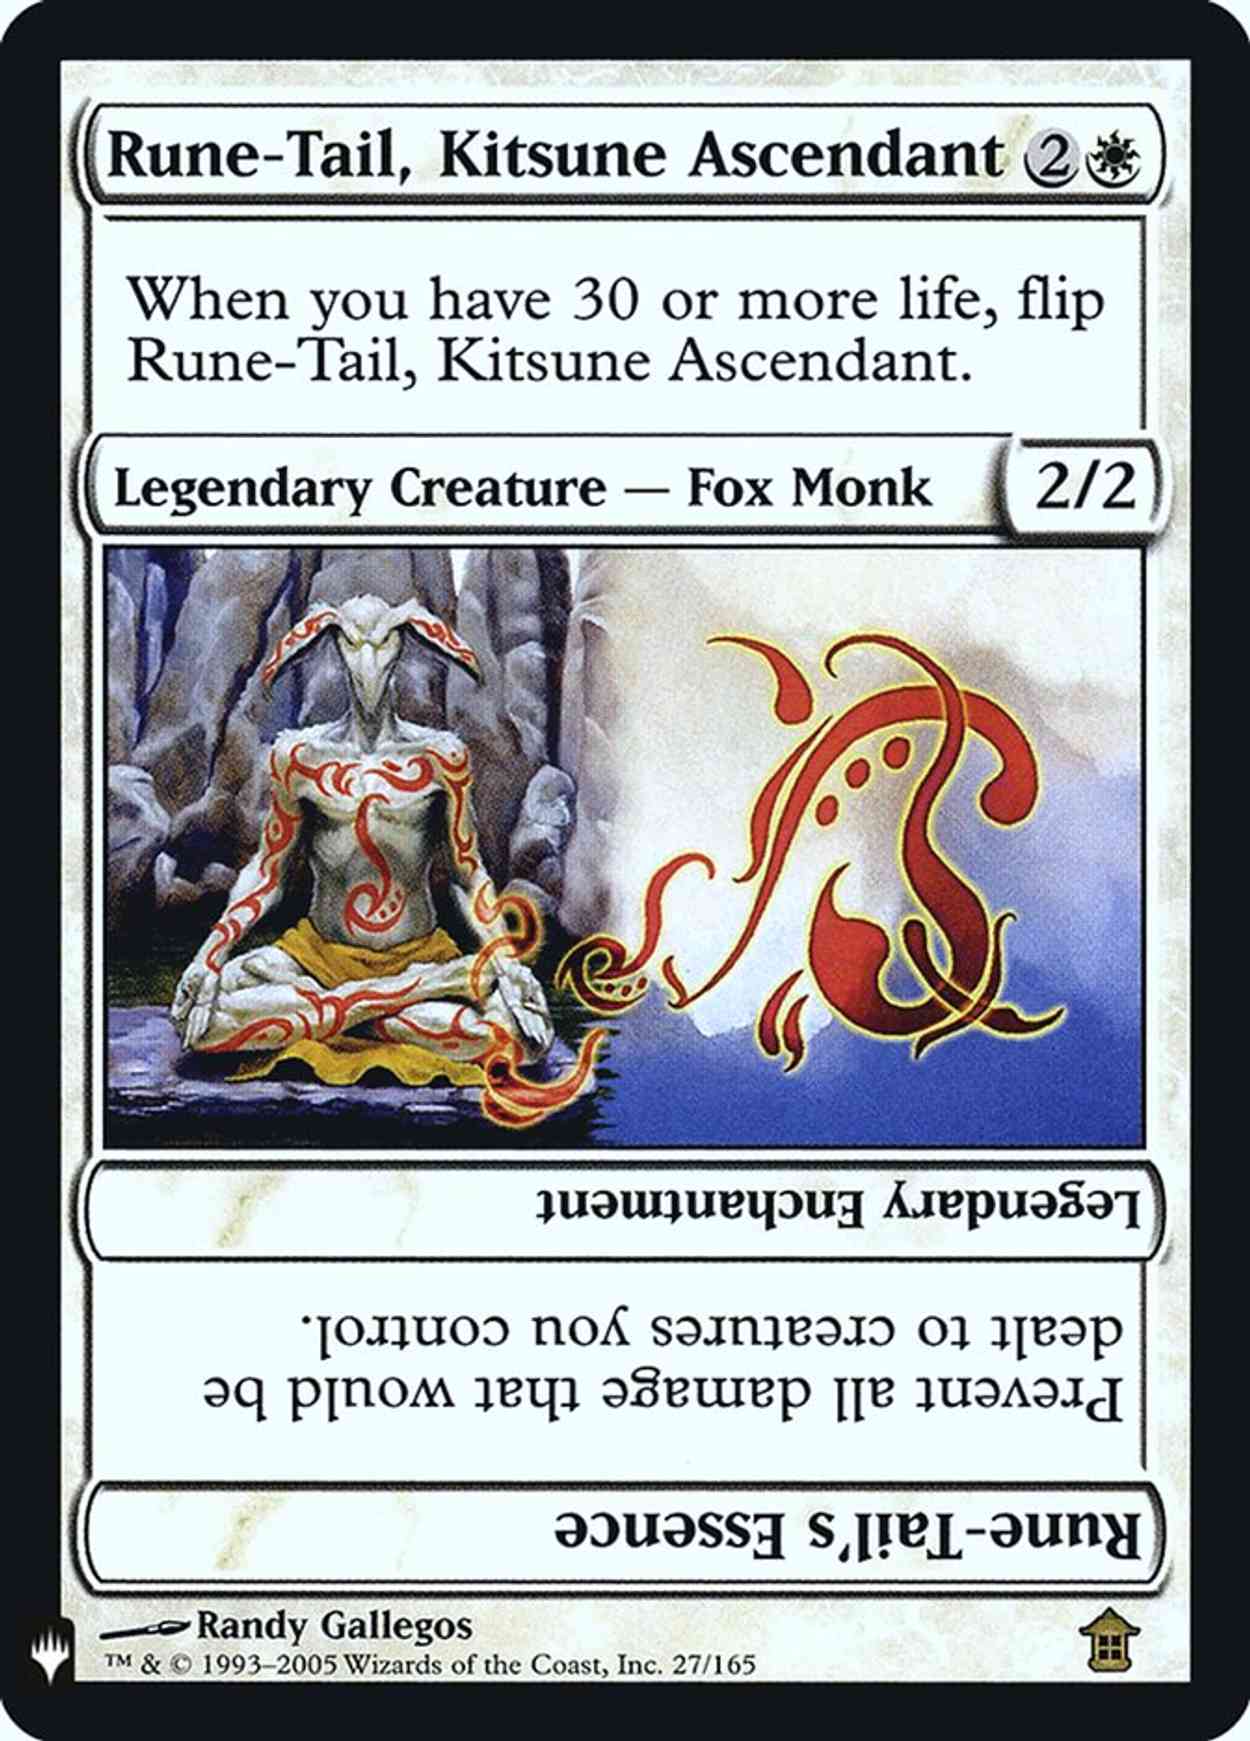 Rune-Tail, Kitsune Ascendant magic card front